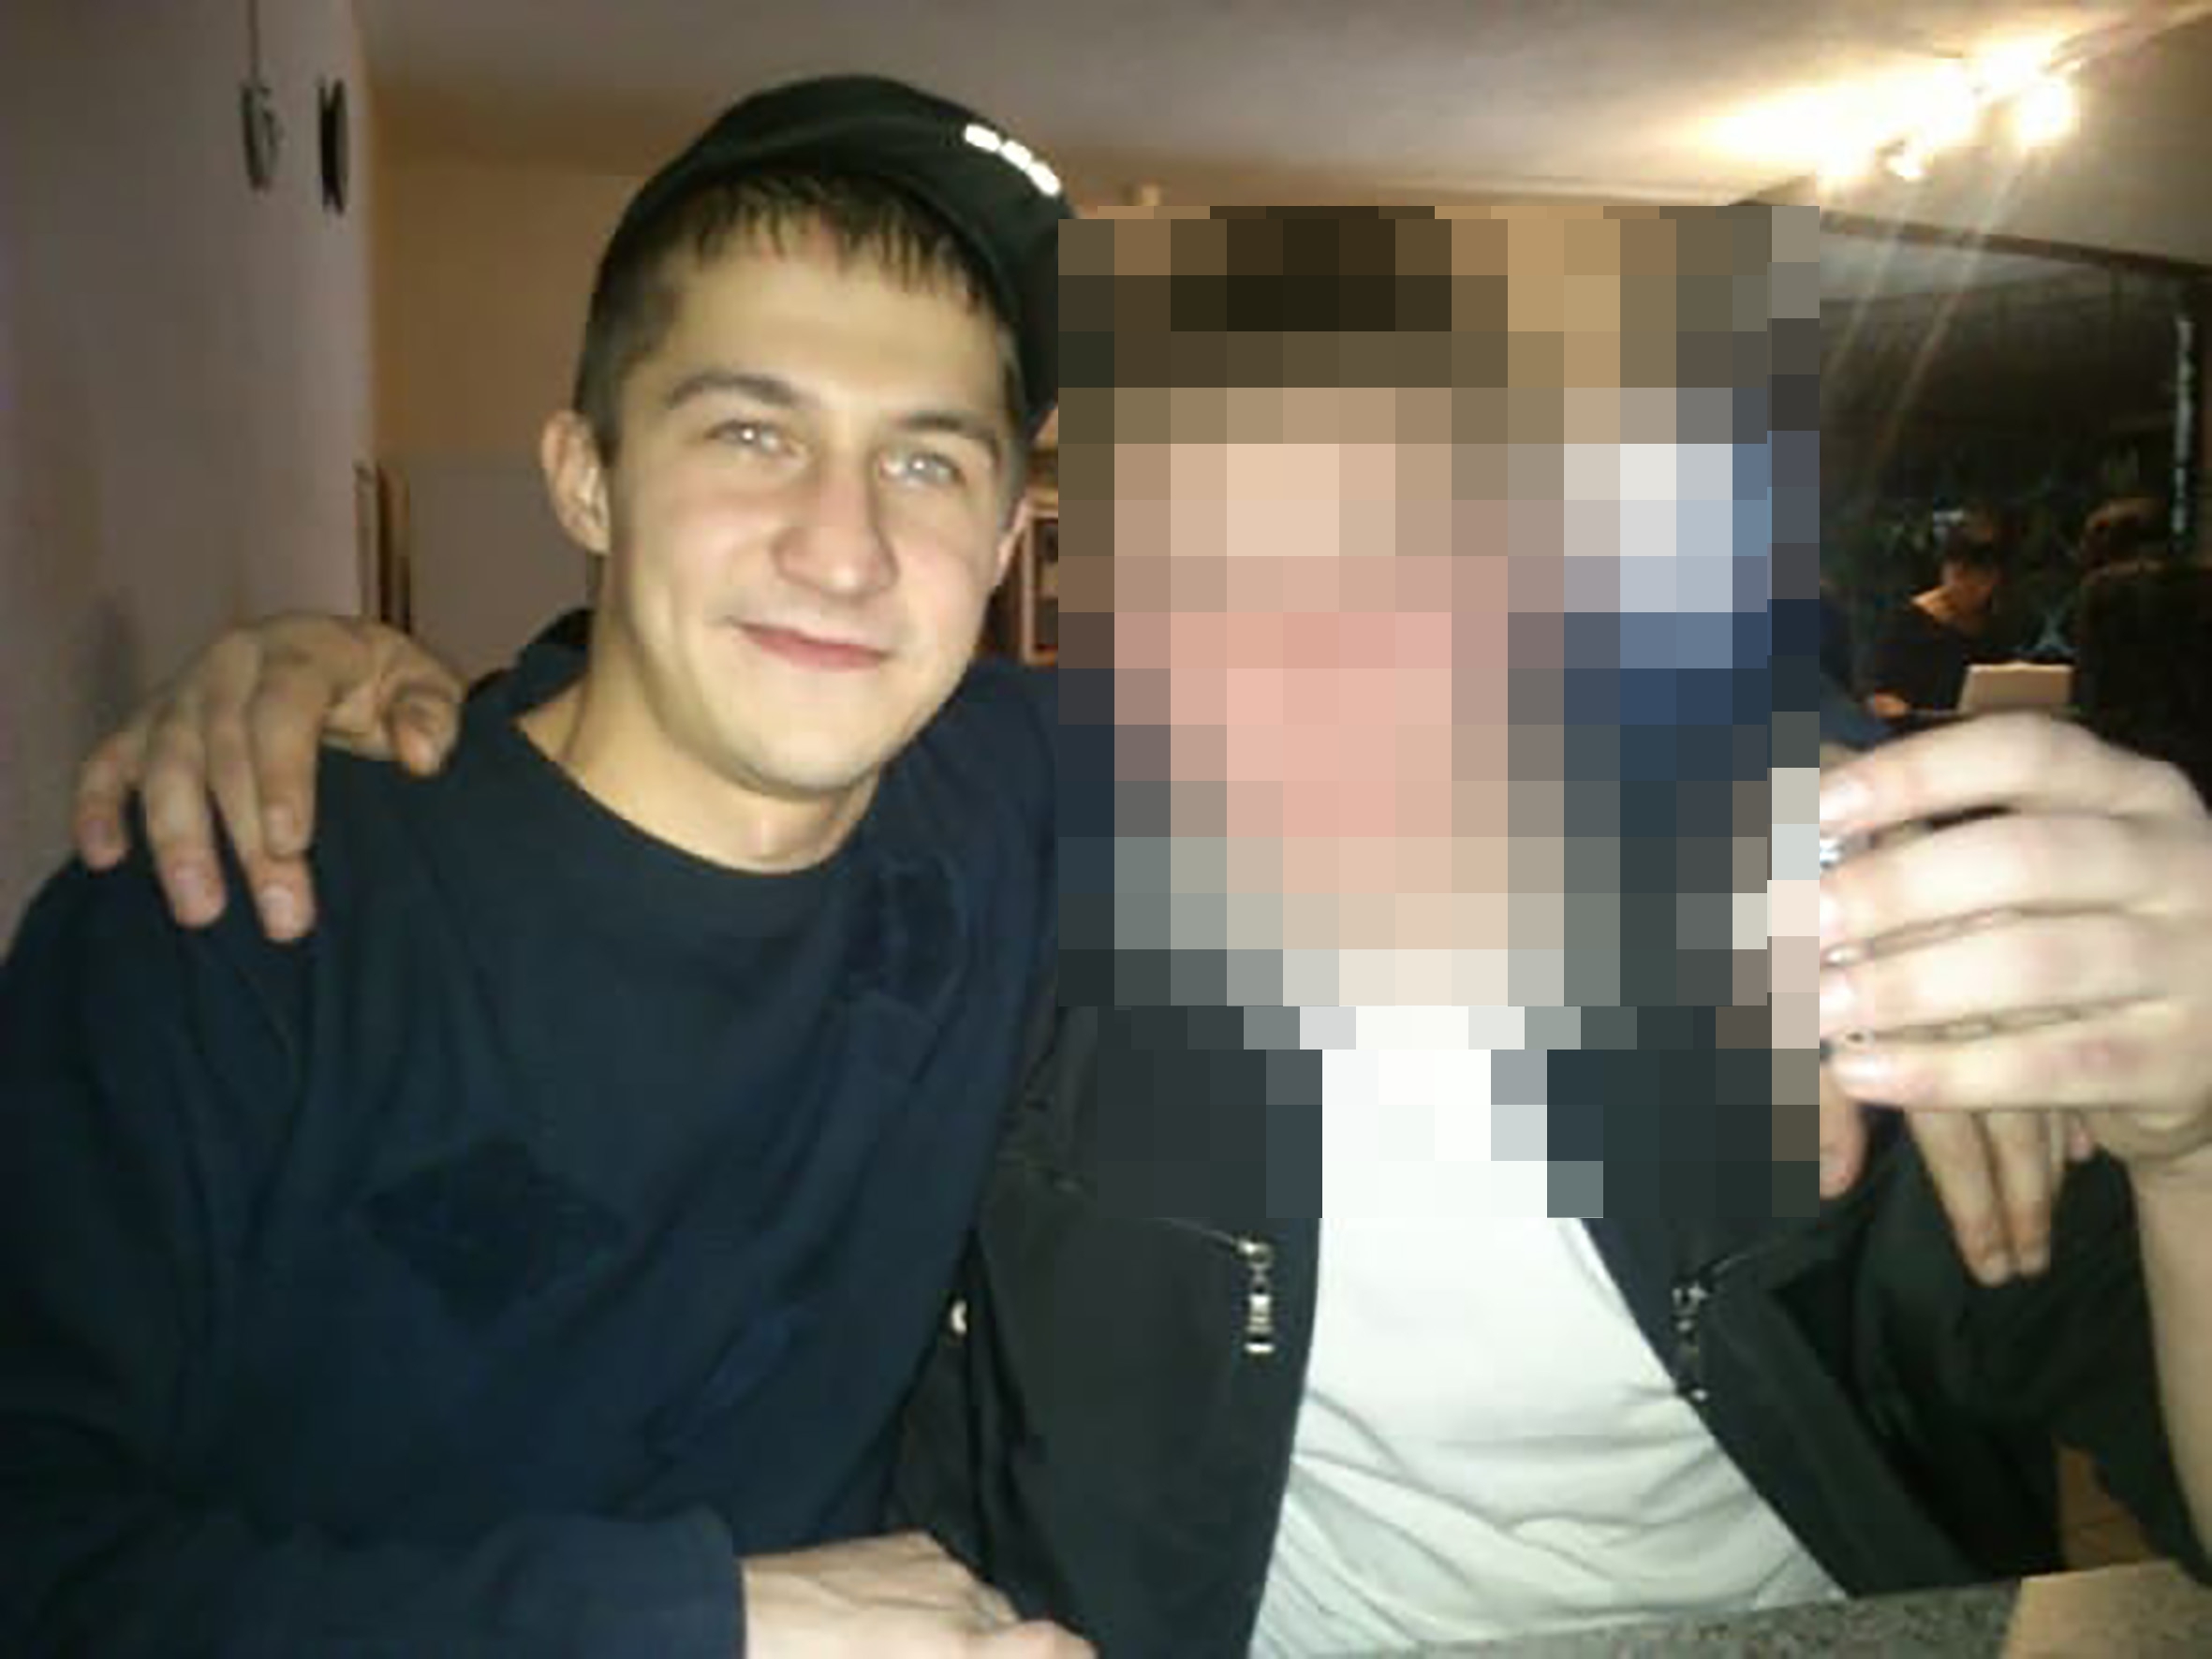 Oleg Sviridov, a la izquierda, se vio obligado a cavar su propia tumba por su amigo después de encontrar imágenes de abuso sexual de su hija.